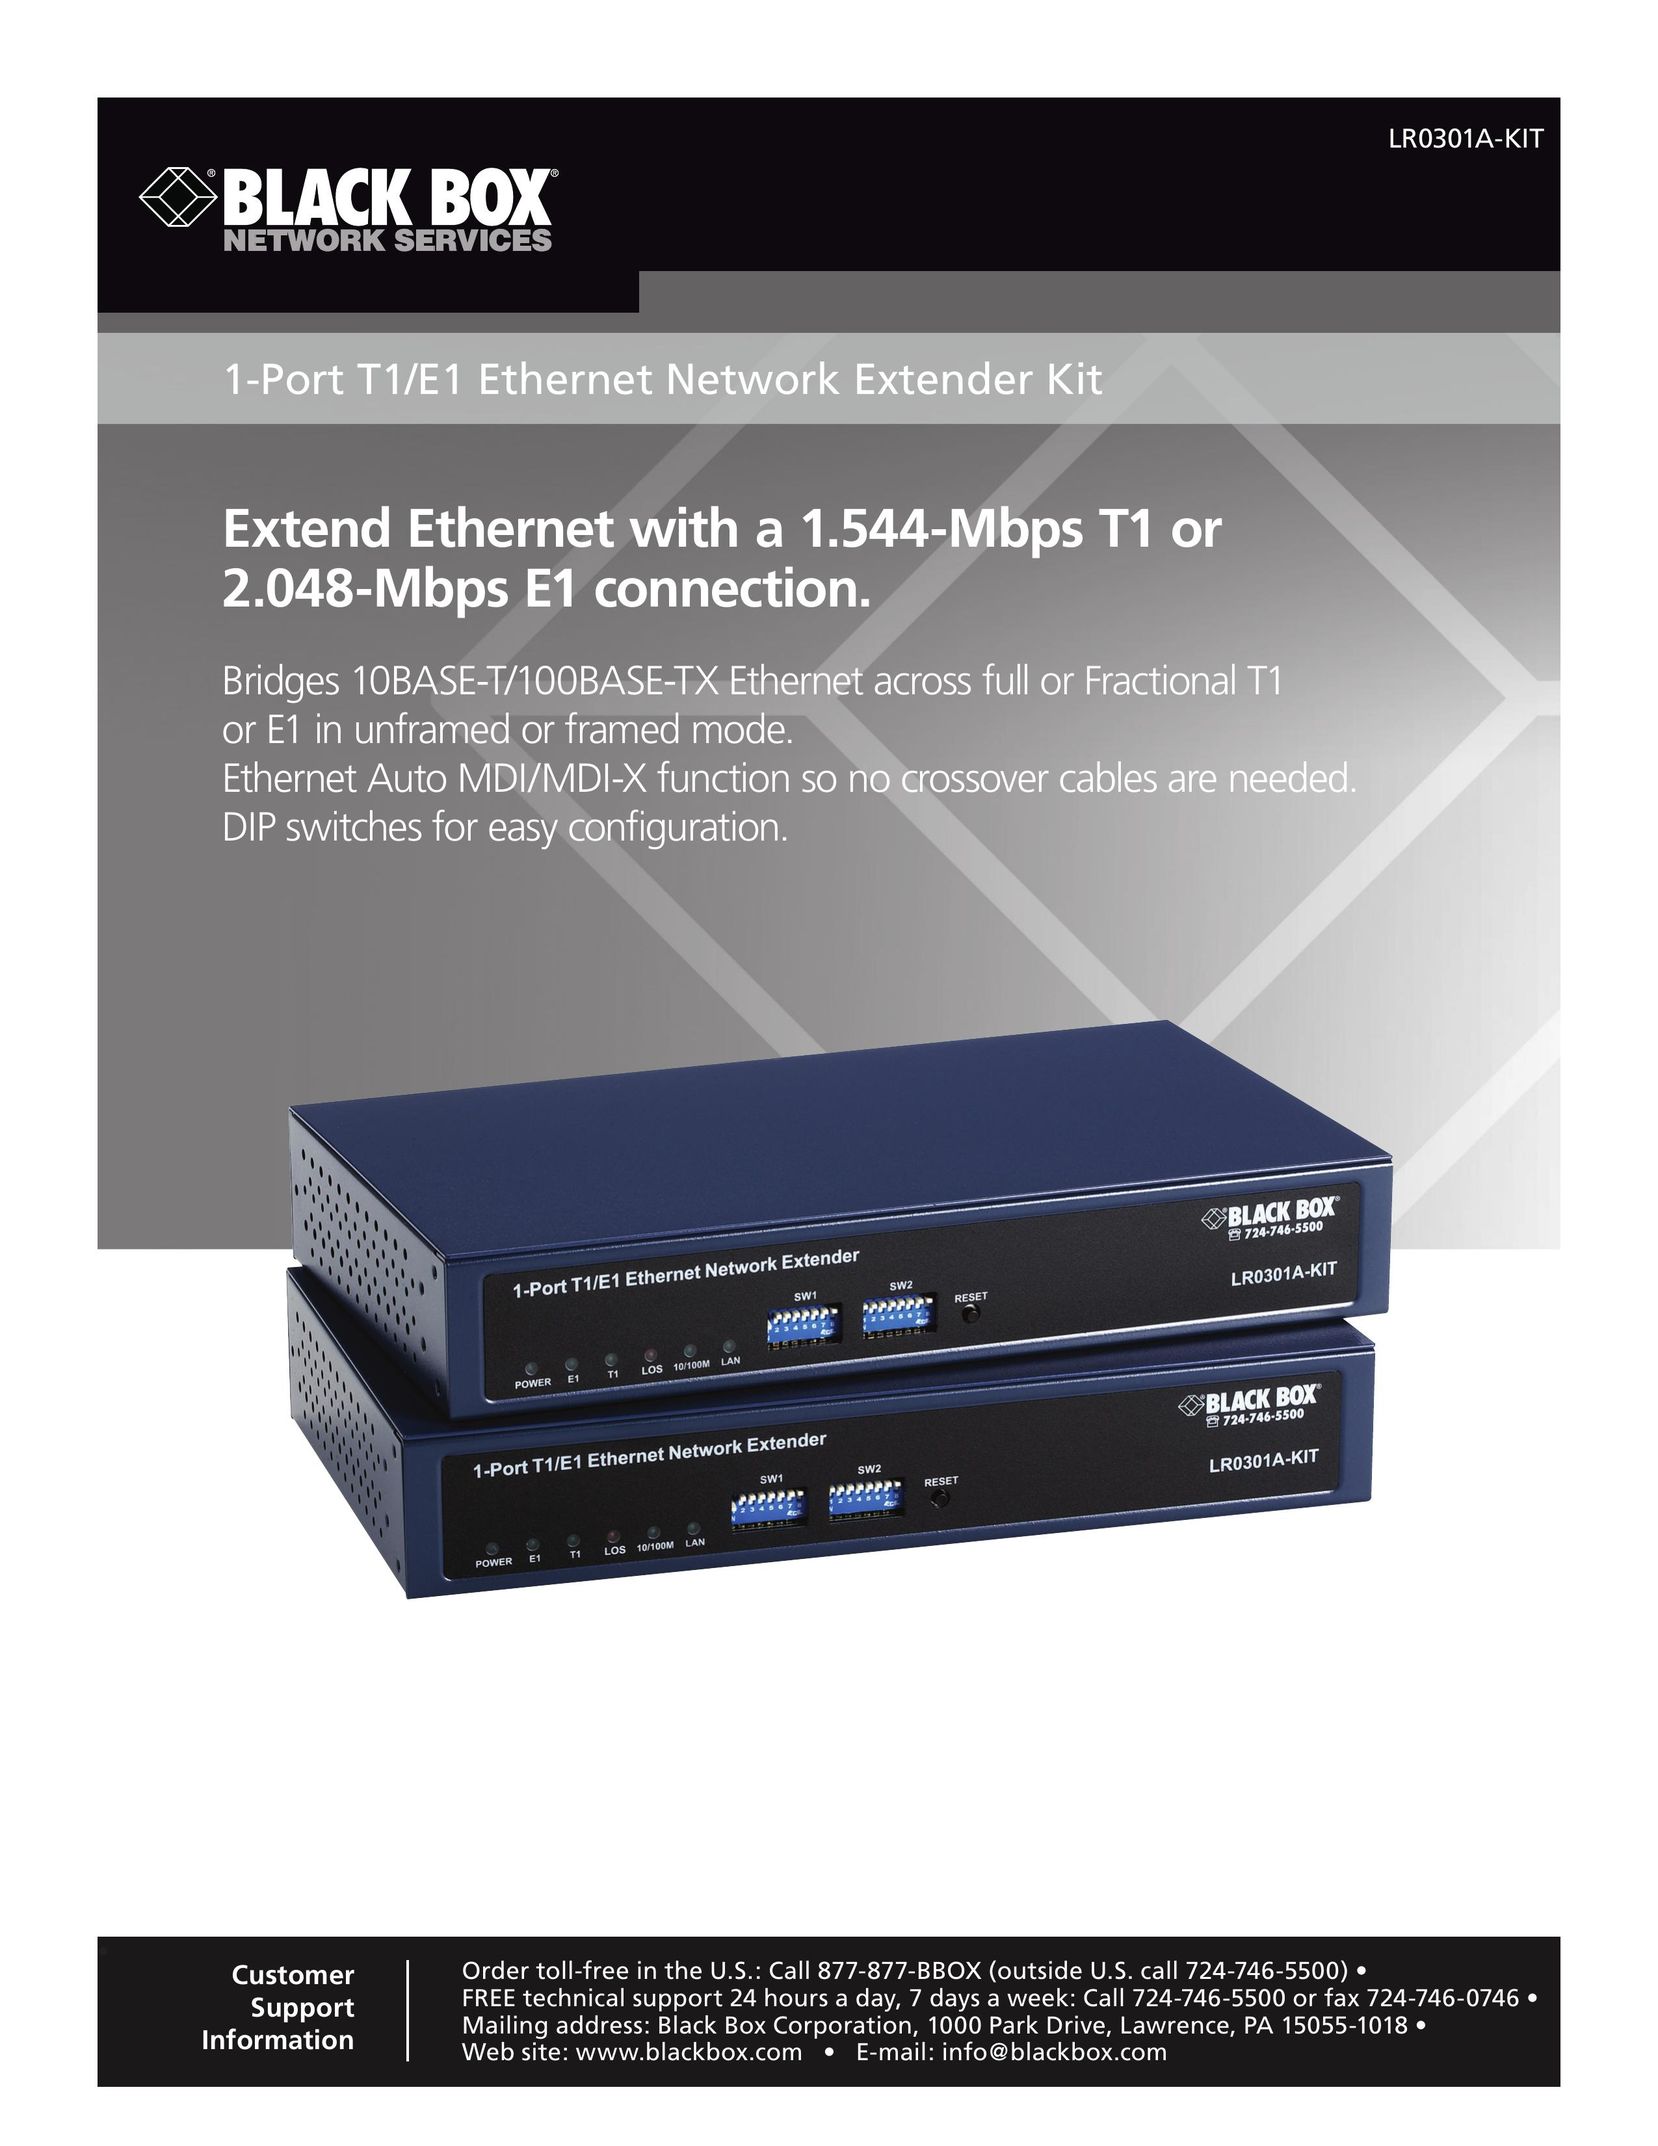 Black Box 1-Port T1/E1 Ethernet Network Extender Kit Network Hardware User Manual